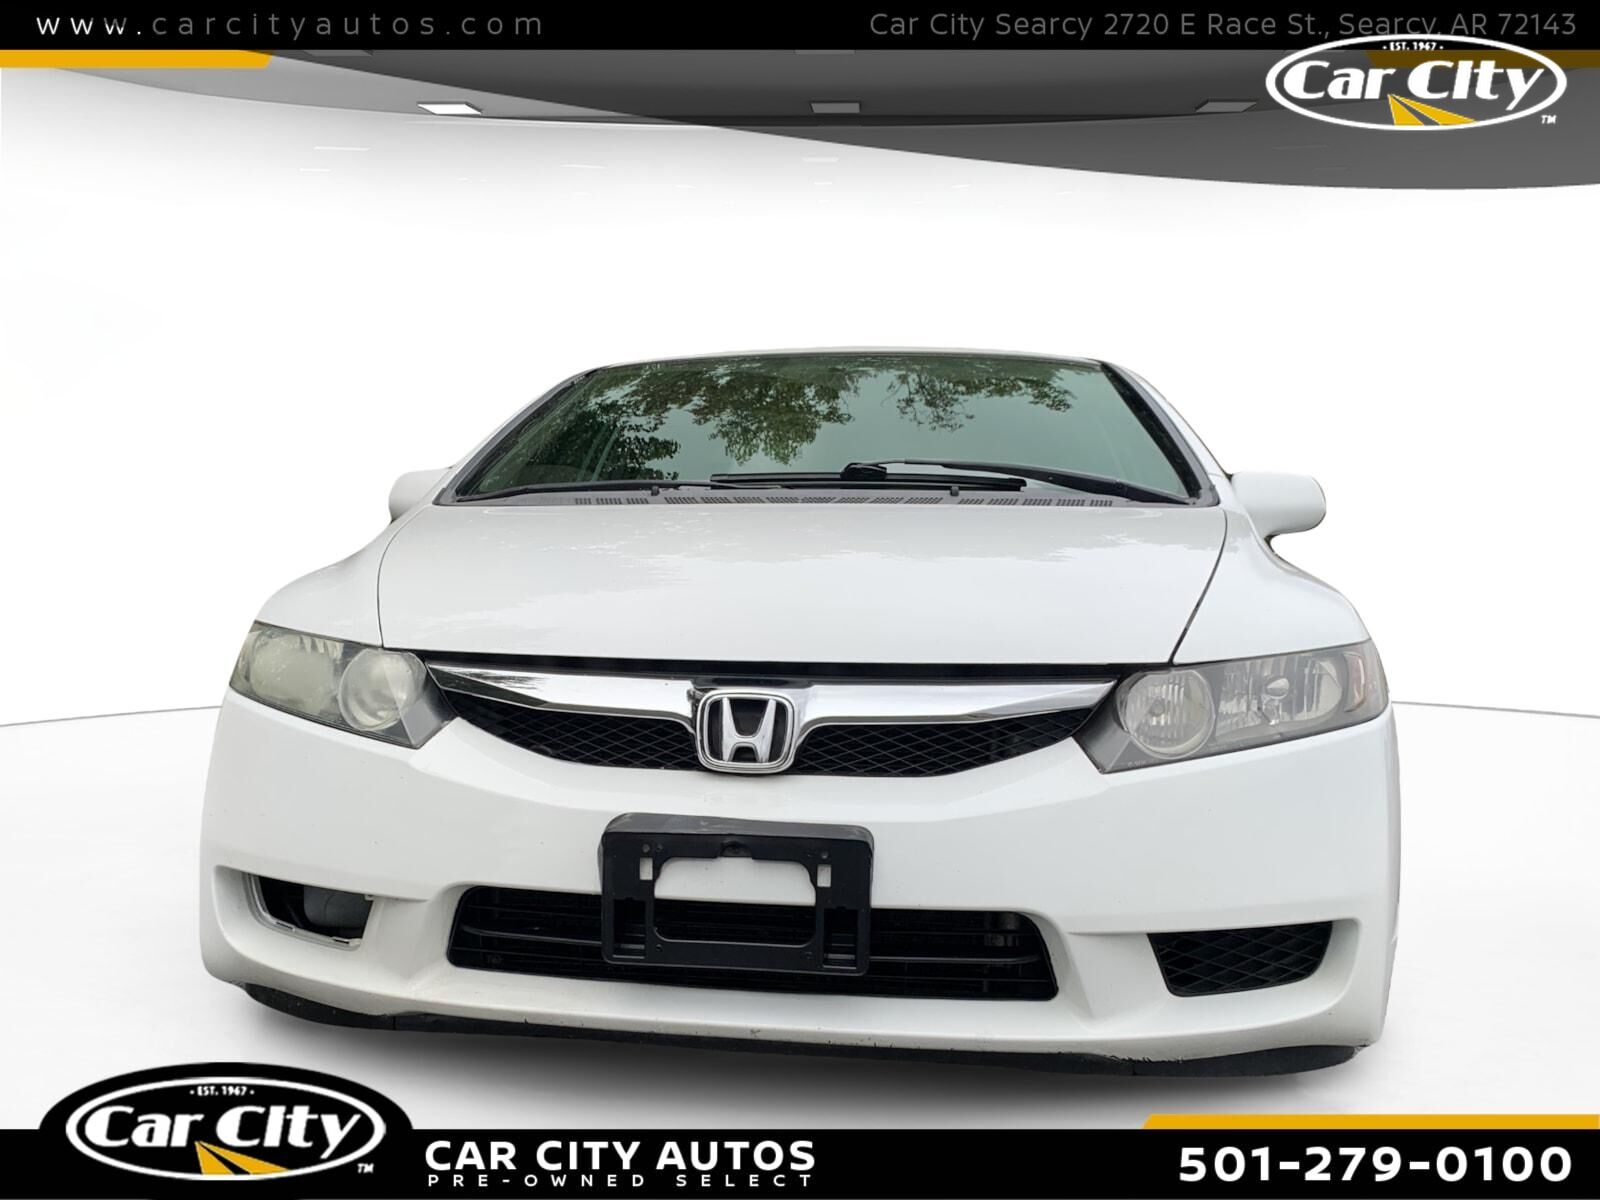 2009 Honda Civic  - Car City Autos